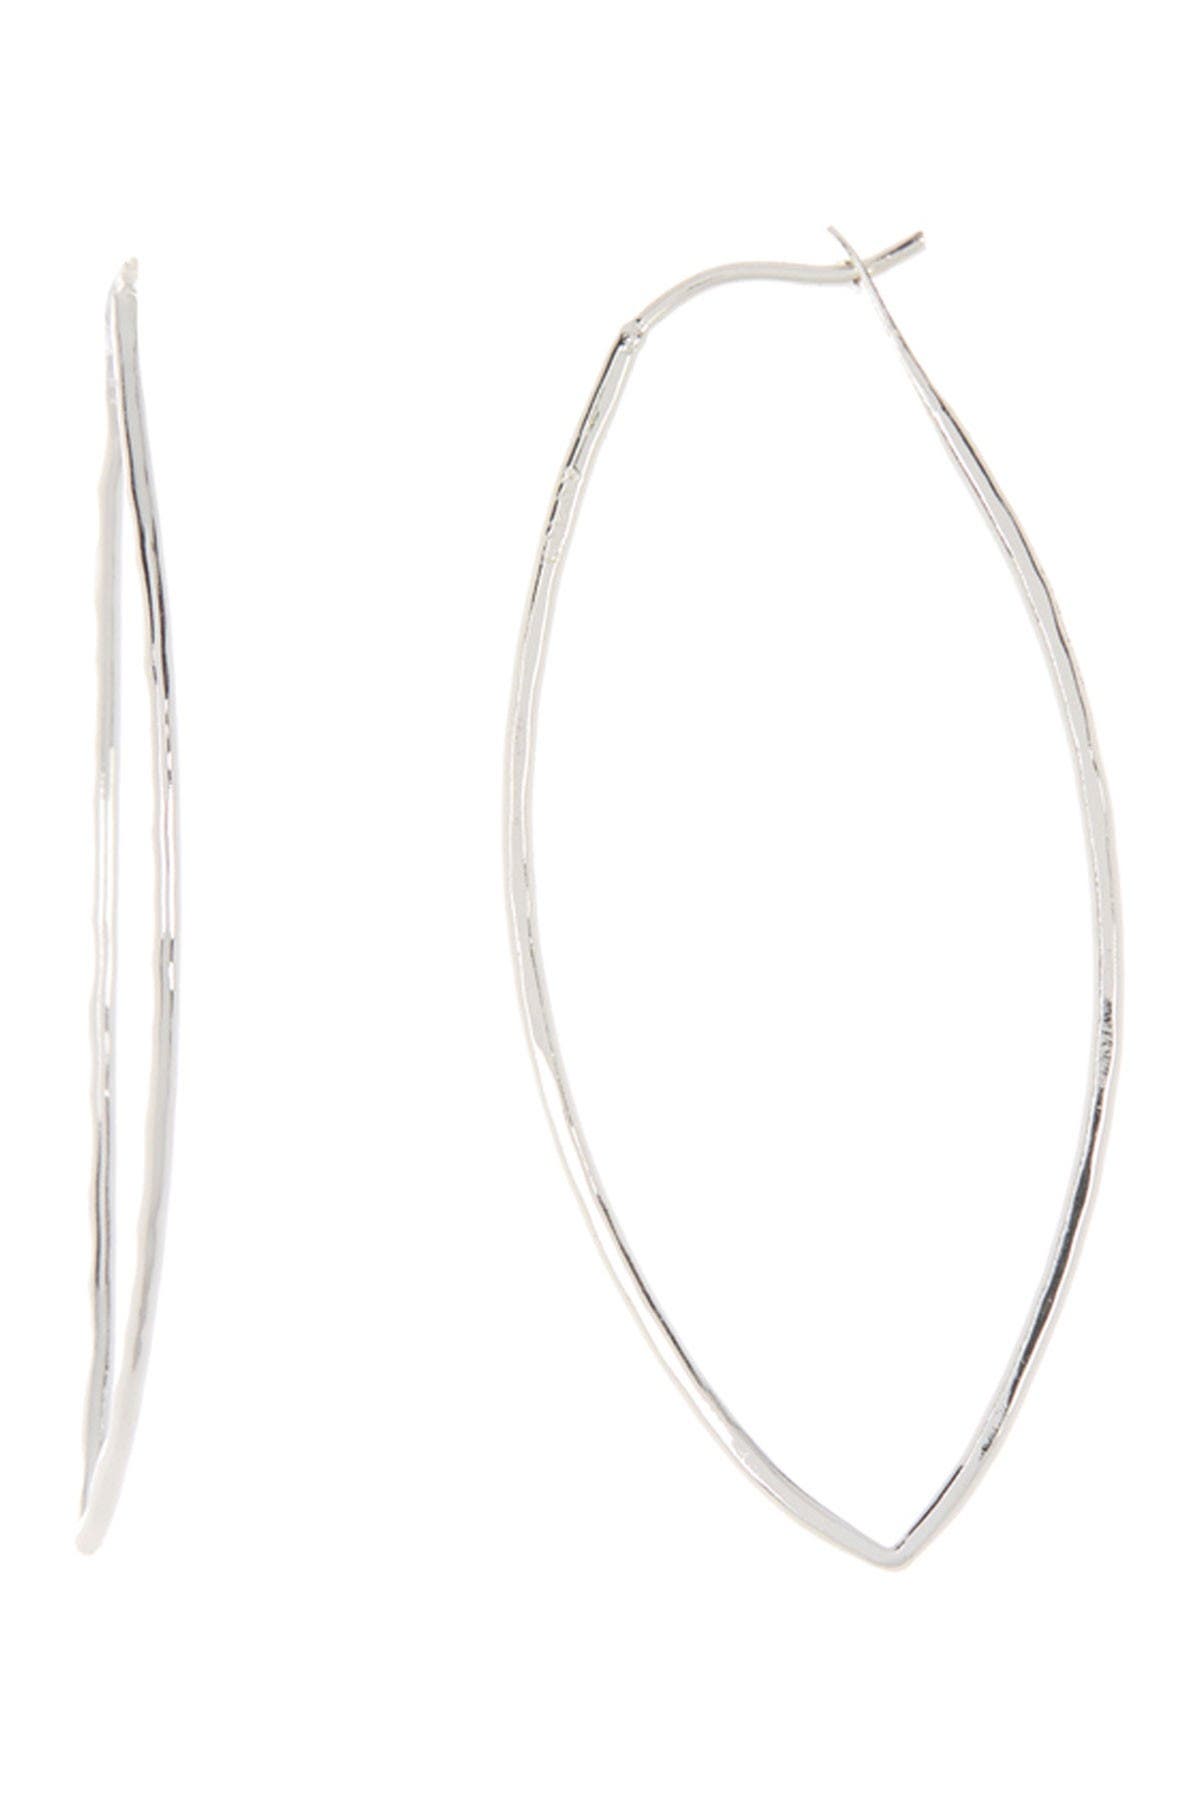 Lightly Hammered Medium Silver Hoop Earrings Sterling Silver Earrings Avocado Shaped Hoop Earrings Hammered Sterling Silver Oval Hoops